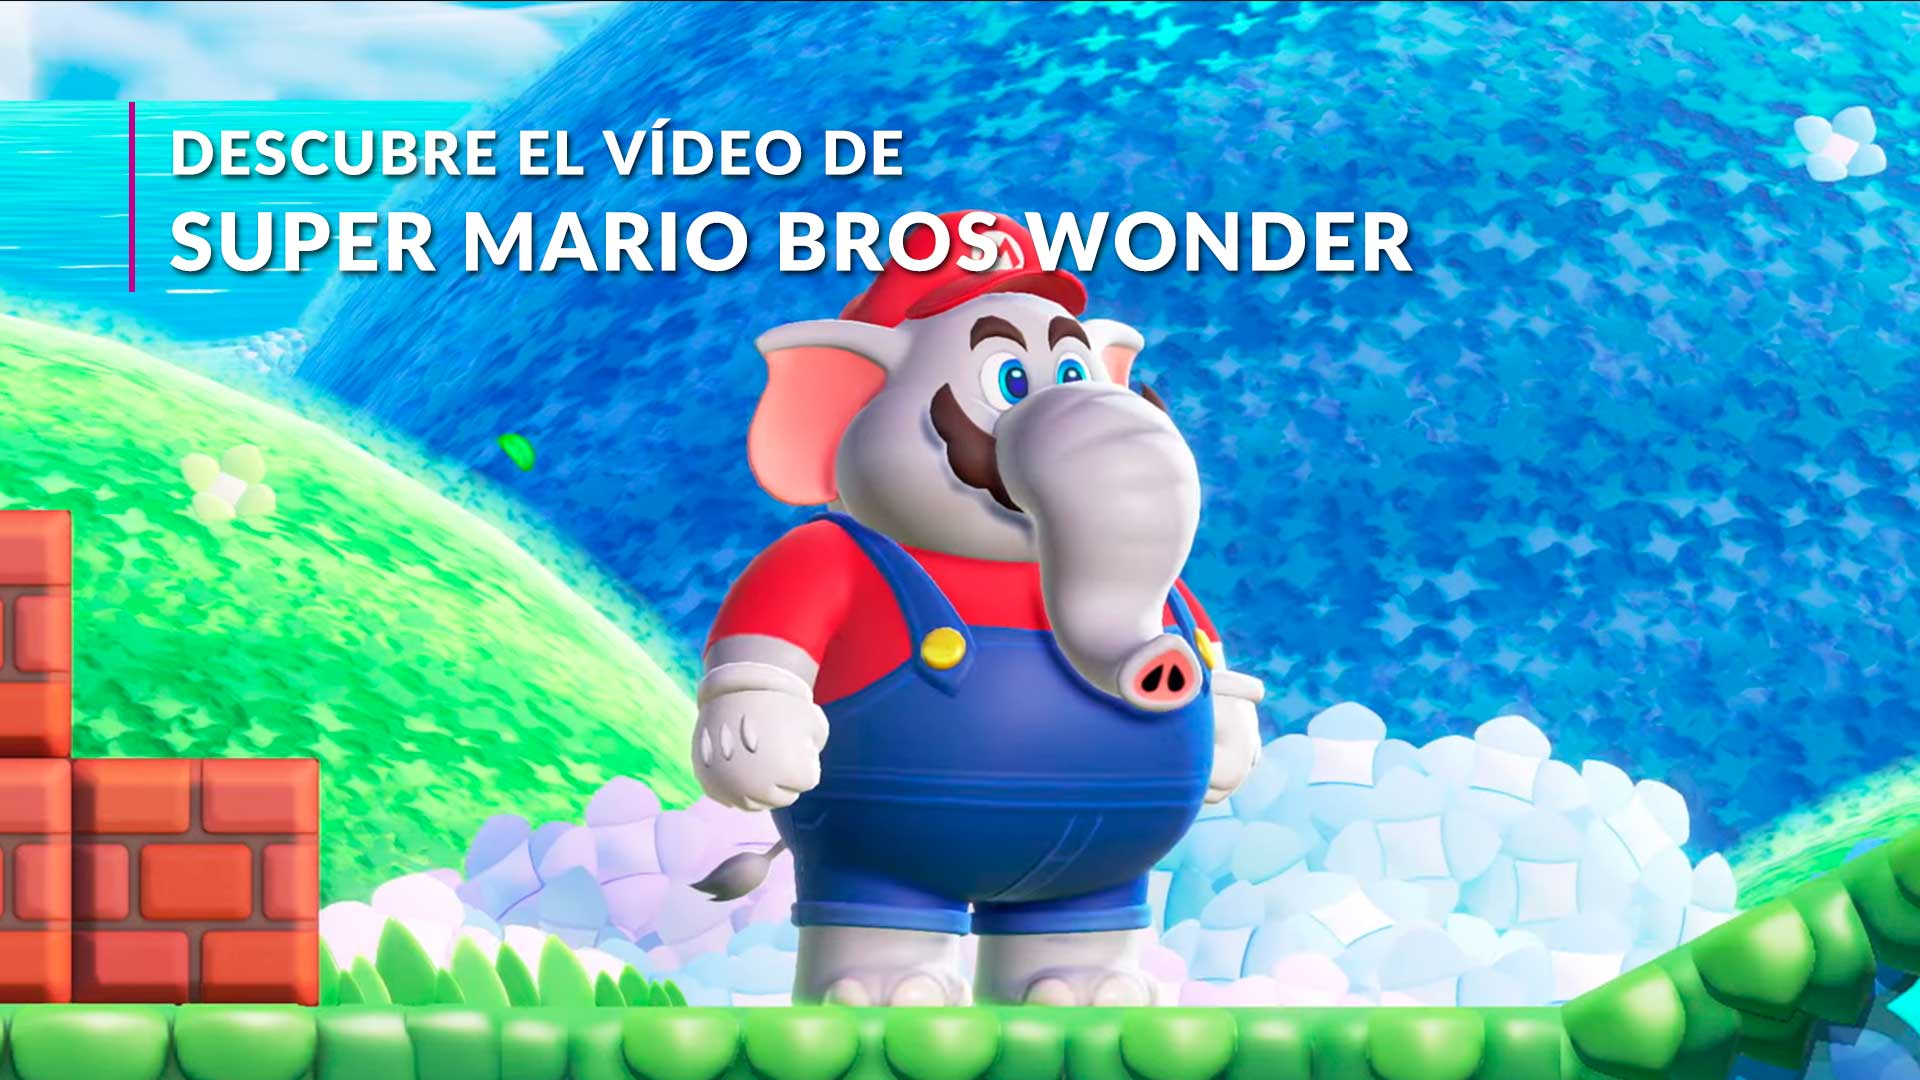 He jugado una hora a Super Mario Bros. Wonder y lo maravilloso no